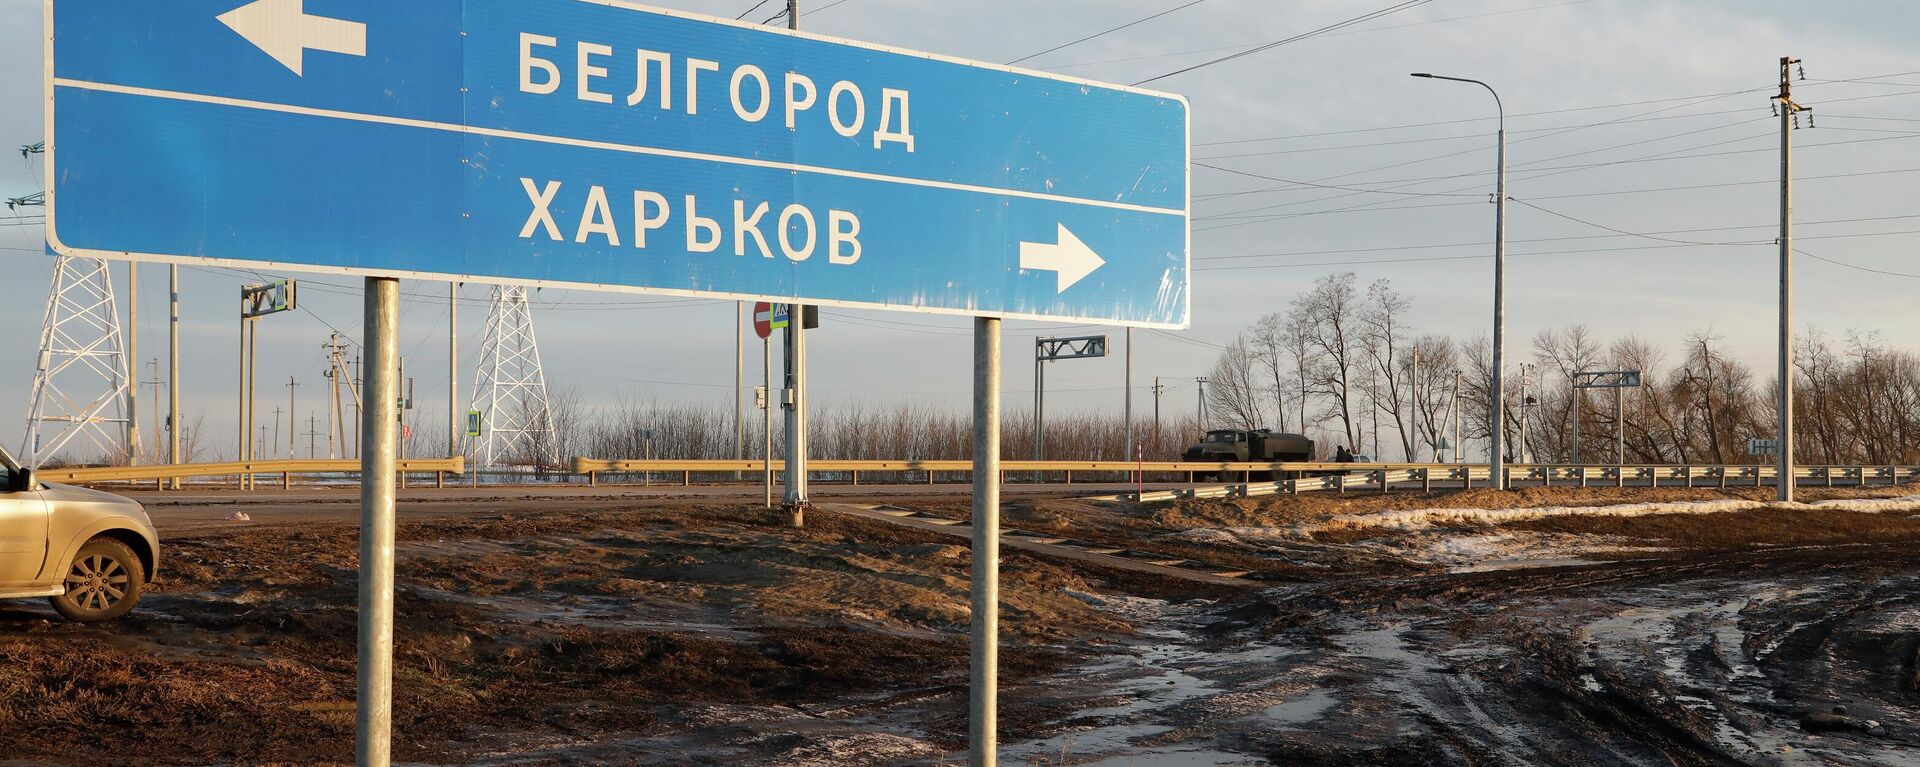 Placa rodoviária apontando para Belgorod, na Rússia (à esquerda), e Carcóvia, na Ucrânia (à direita). - Sputnik Brasil, 1920, 15.09.2022